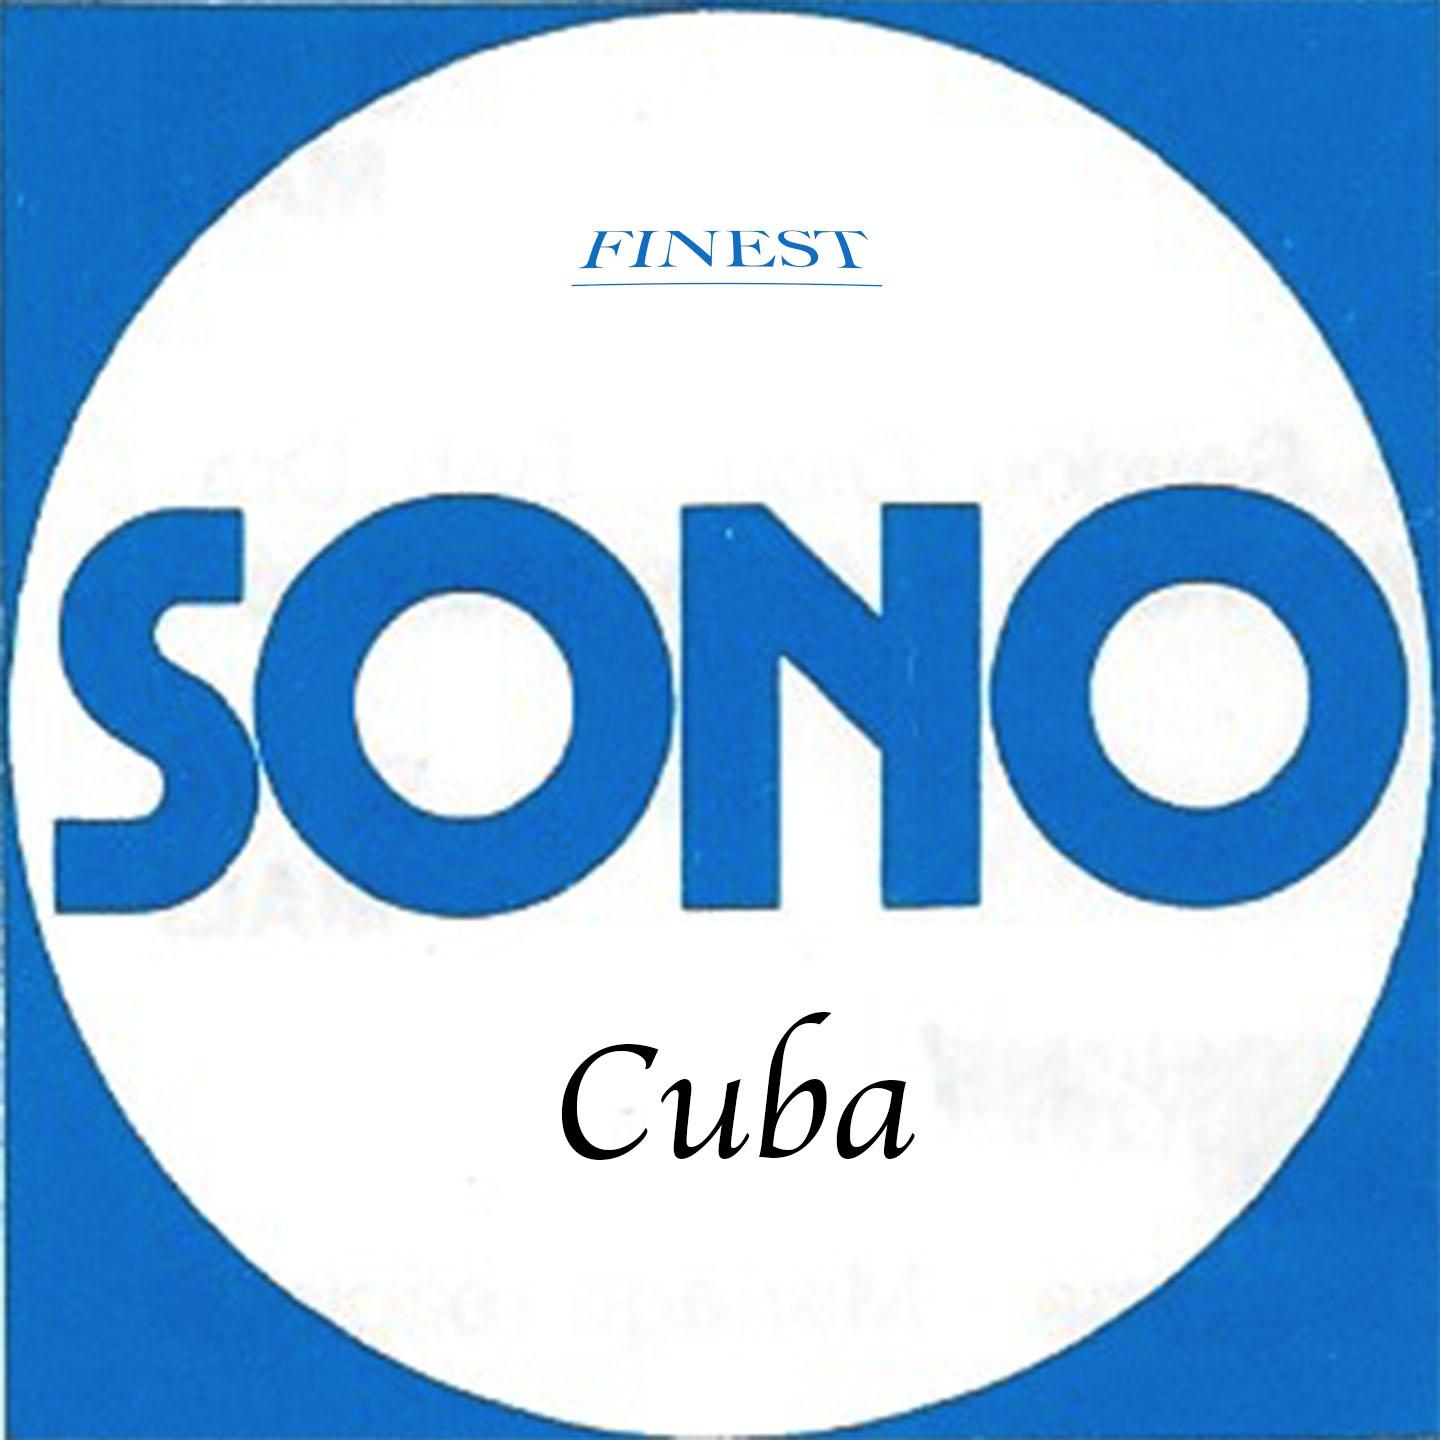 Finest Sono Cuba